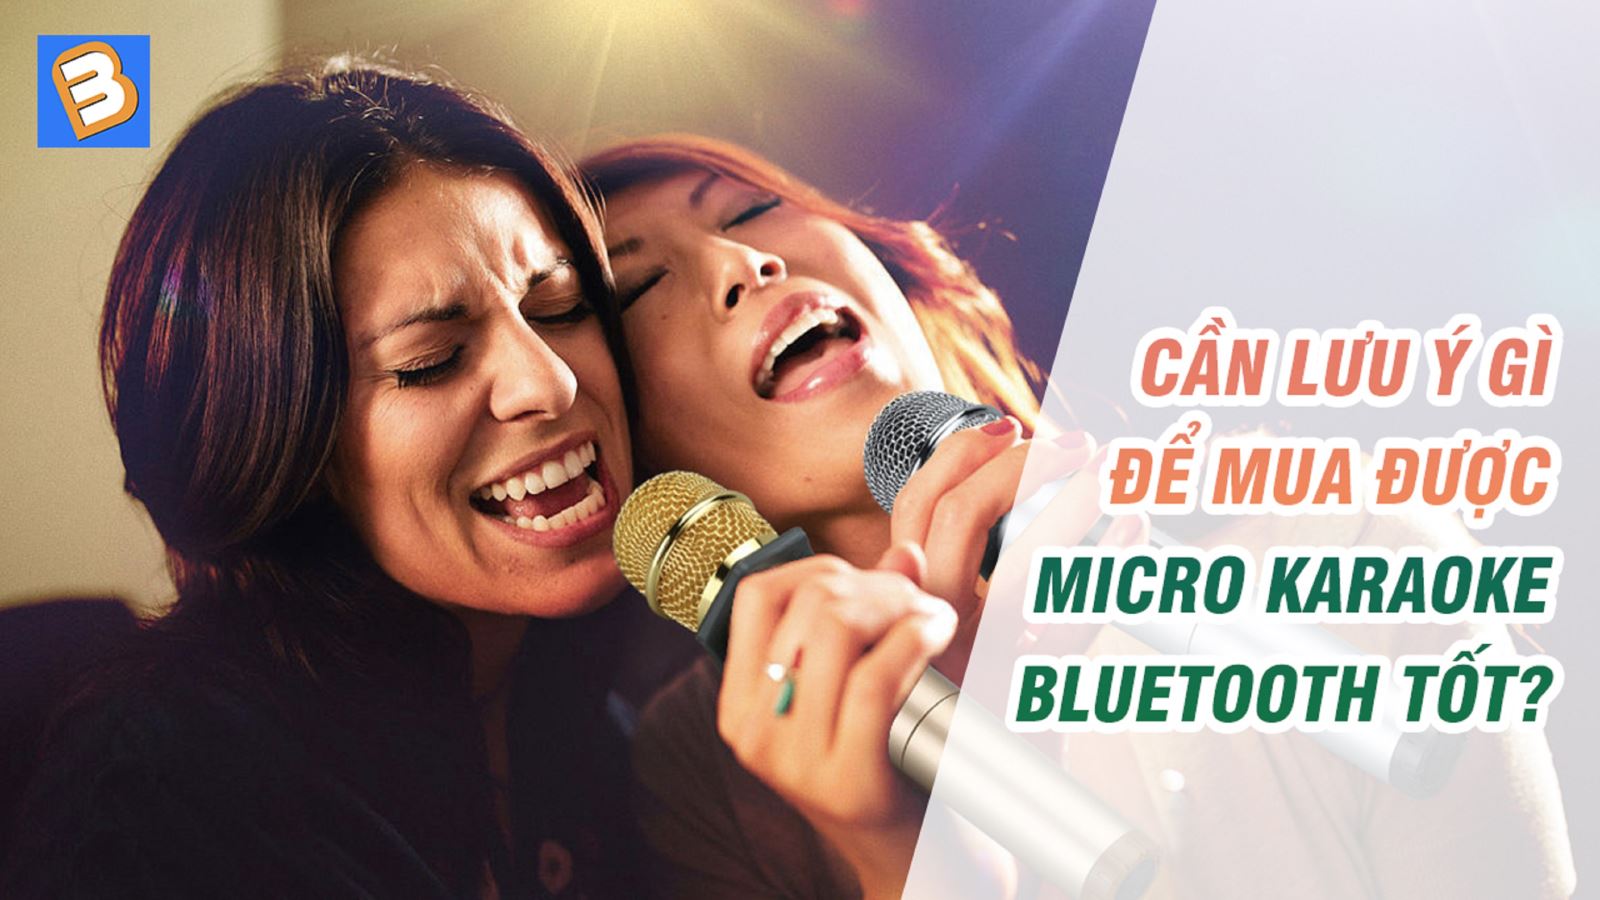 Cần lưu ý gì để mua được micro karaoke Bluetooth tốt?